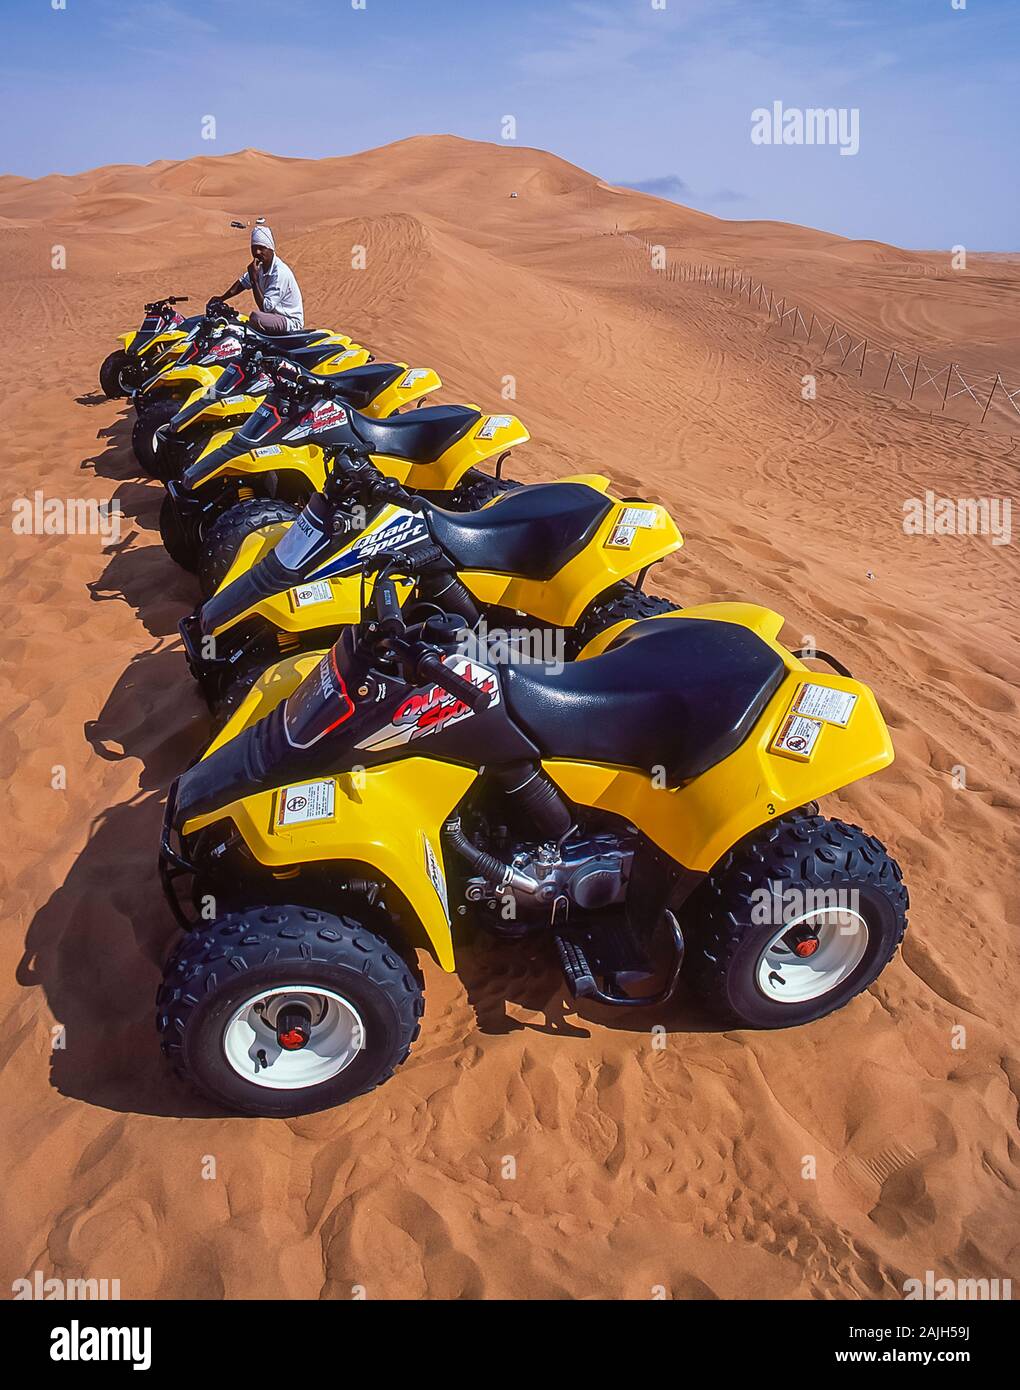 Dubai. Un fornitore di quad-bike attende l'arrivo dei turisti per emozioni e sversamenti sul bellissimo paesaggio desertico di dune di sabbia soffiate dal vento naturale vicino al villaggio di al Dhaid sulla strada tra la città di Dubai e la città rurale oasi fortezza di Hatta Foto Stock